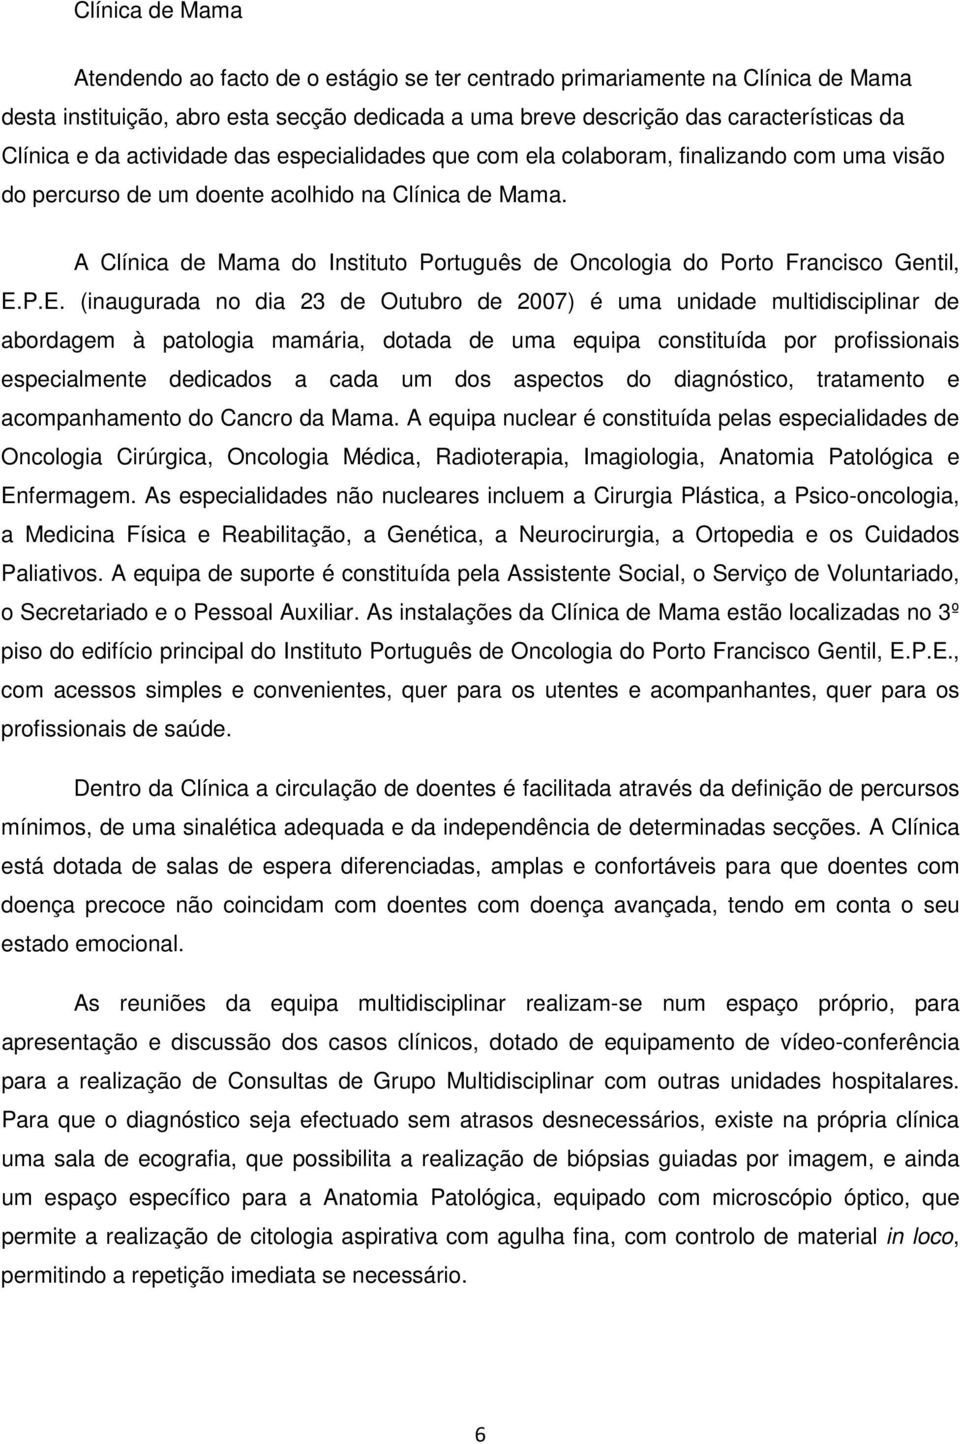 A Clínica de Mama do Instituto Português de Oncologia do Porto Francisco Gentil, E.